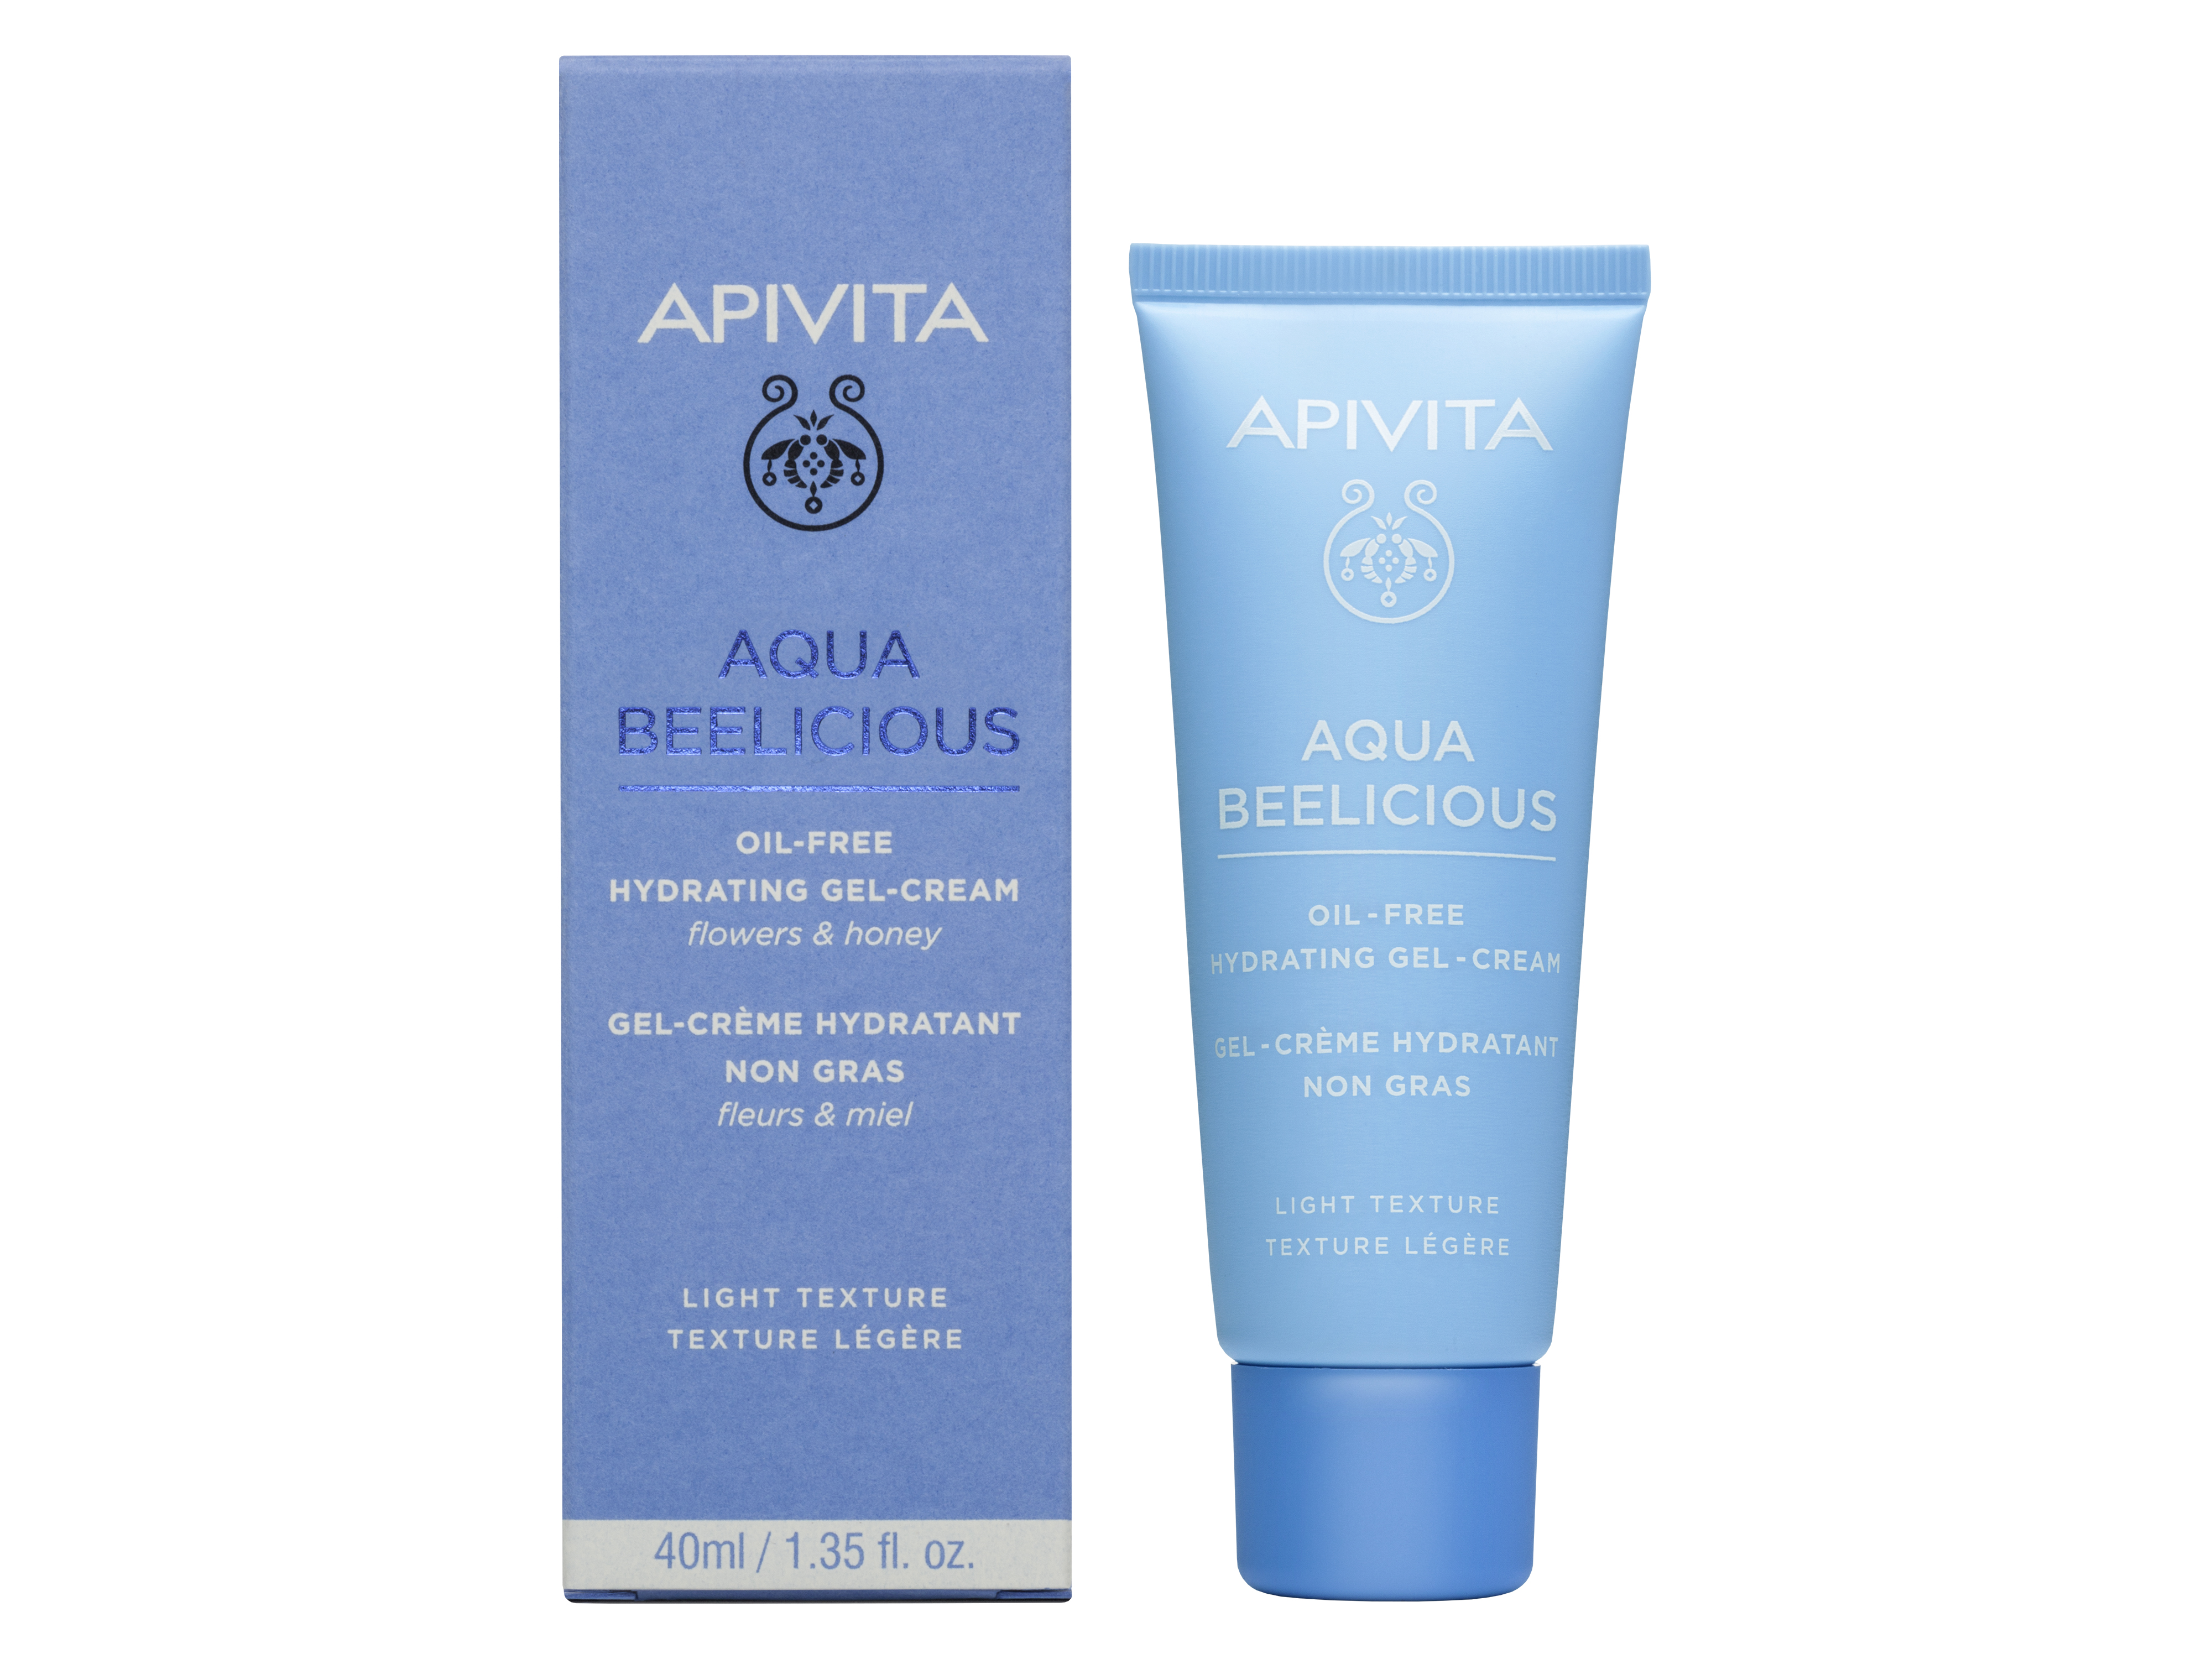 Apivita Aqua Beelicious Oil-Free Hydrating Gel-Cream, 40 ml